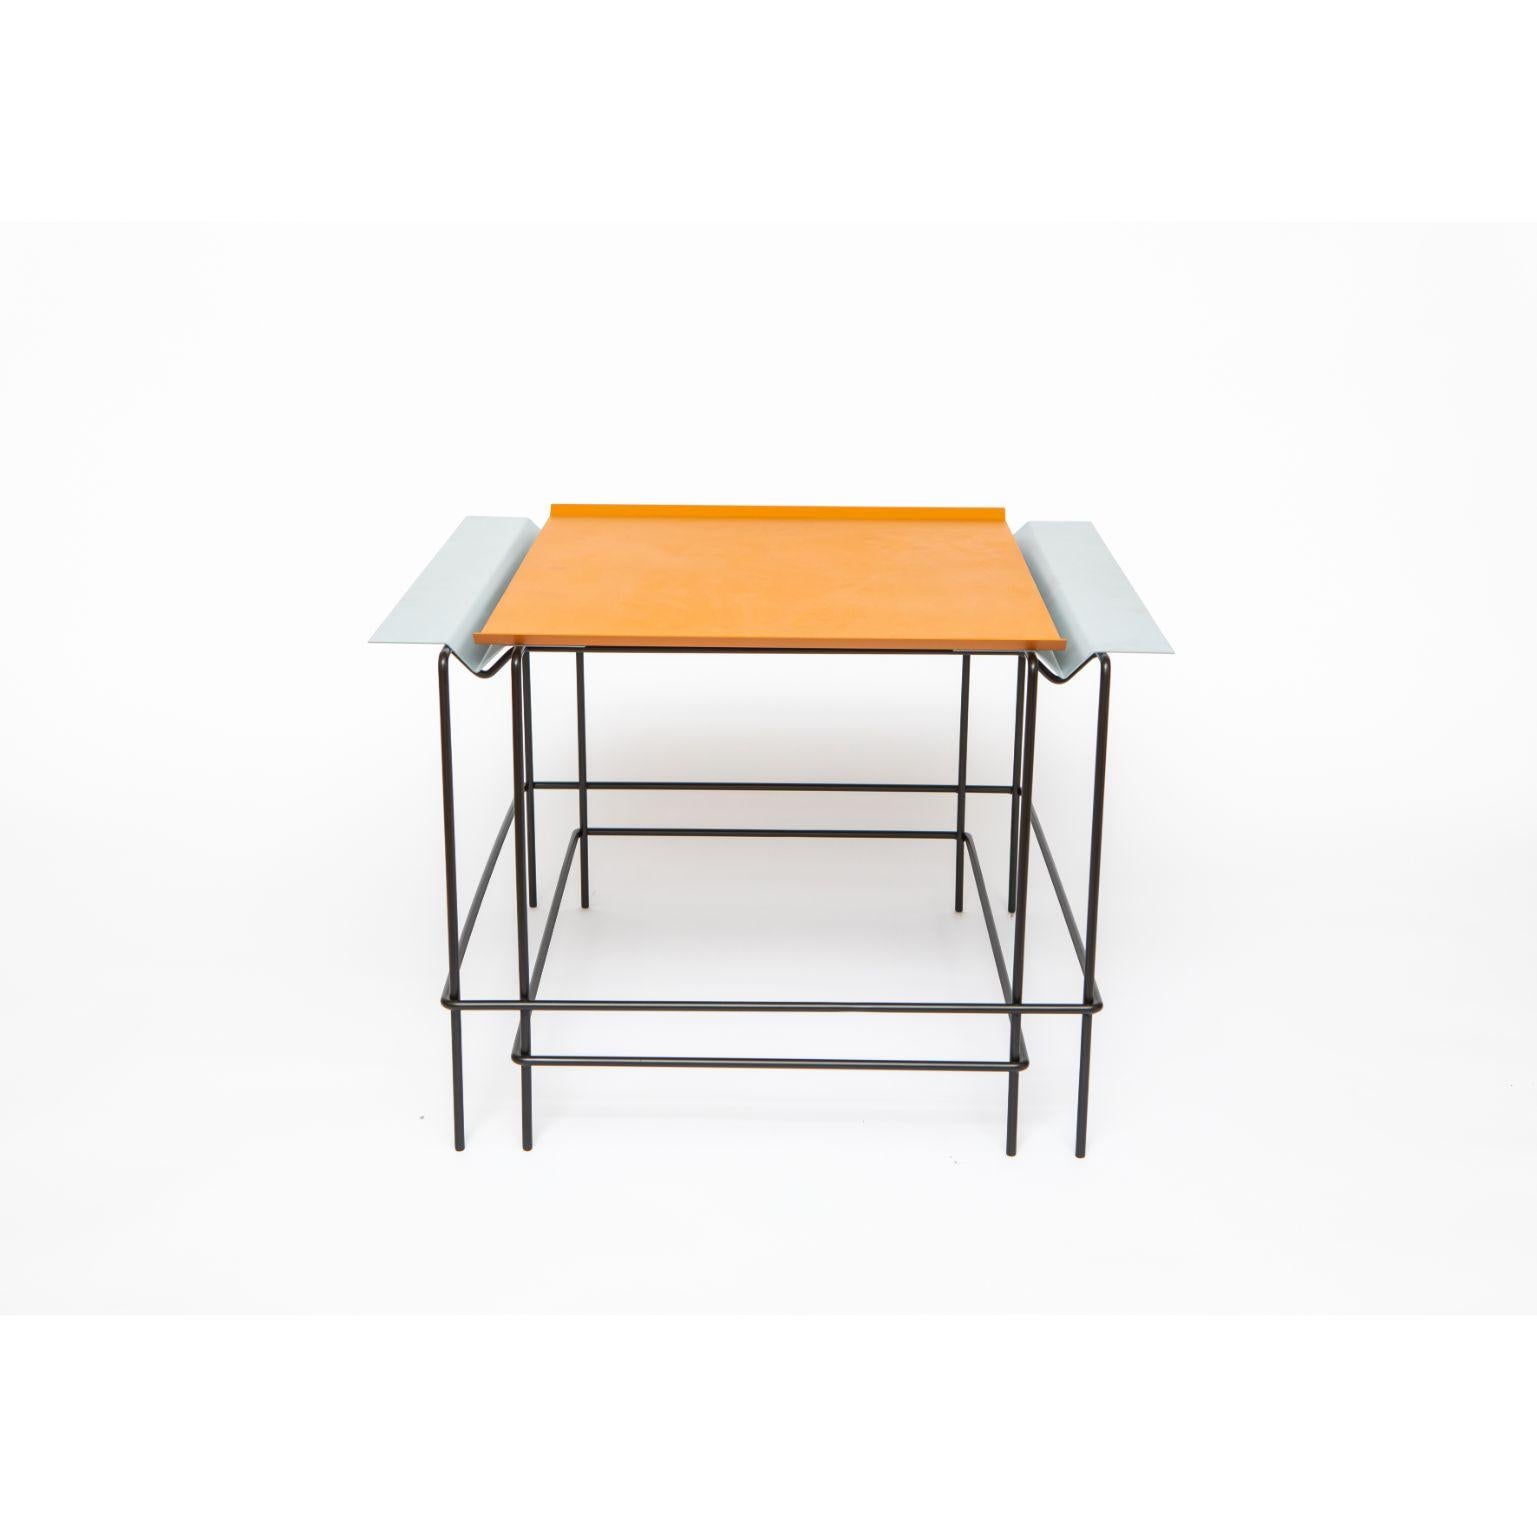 Leva 40 - Table par Alva Design
Matériaux : Métal peint, acier inoxydable
Dimensions : 60 x 40 x 59 cm

ALVA est un bureau de conception de meubles et d'objets, formé par les frères Susana Bastos, artiste et designer, et Marcelo Alvarenga,